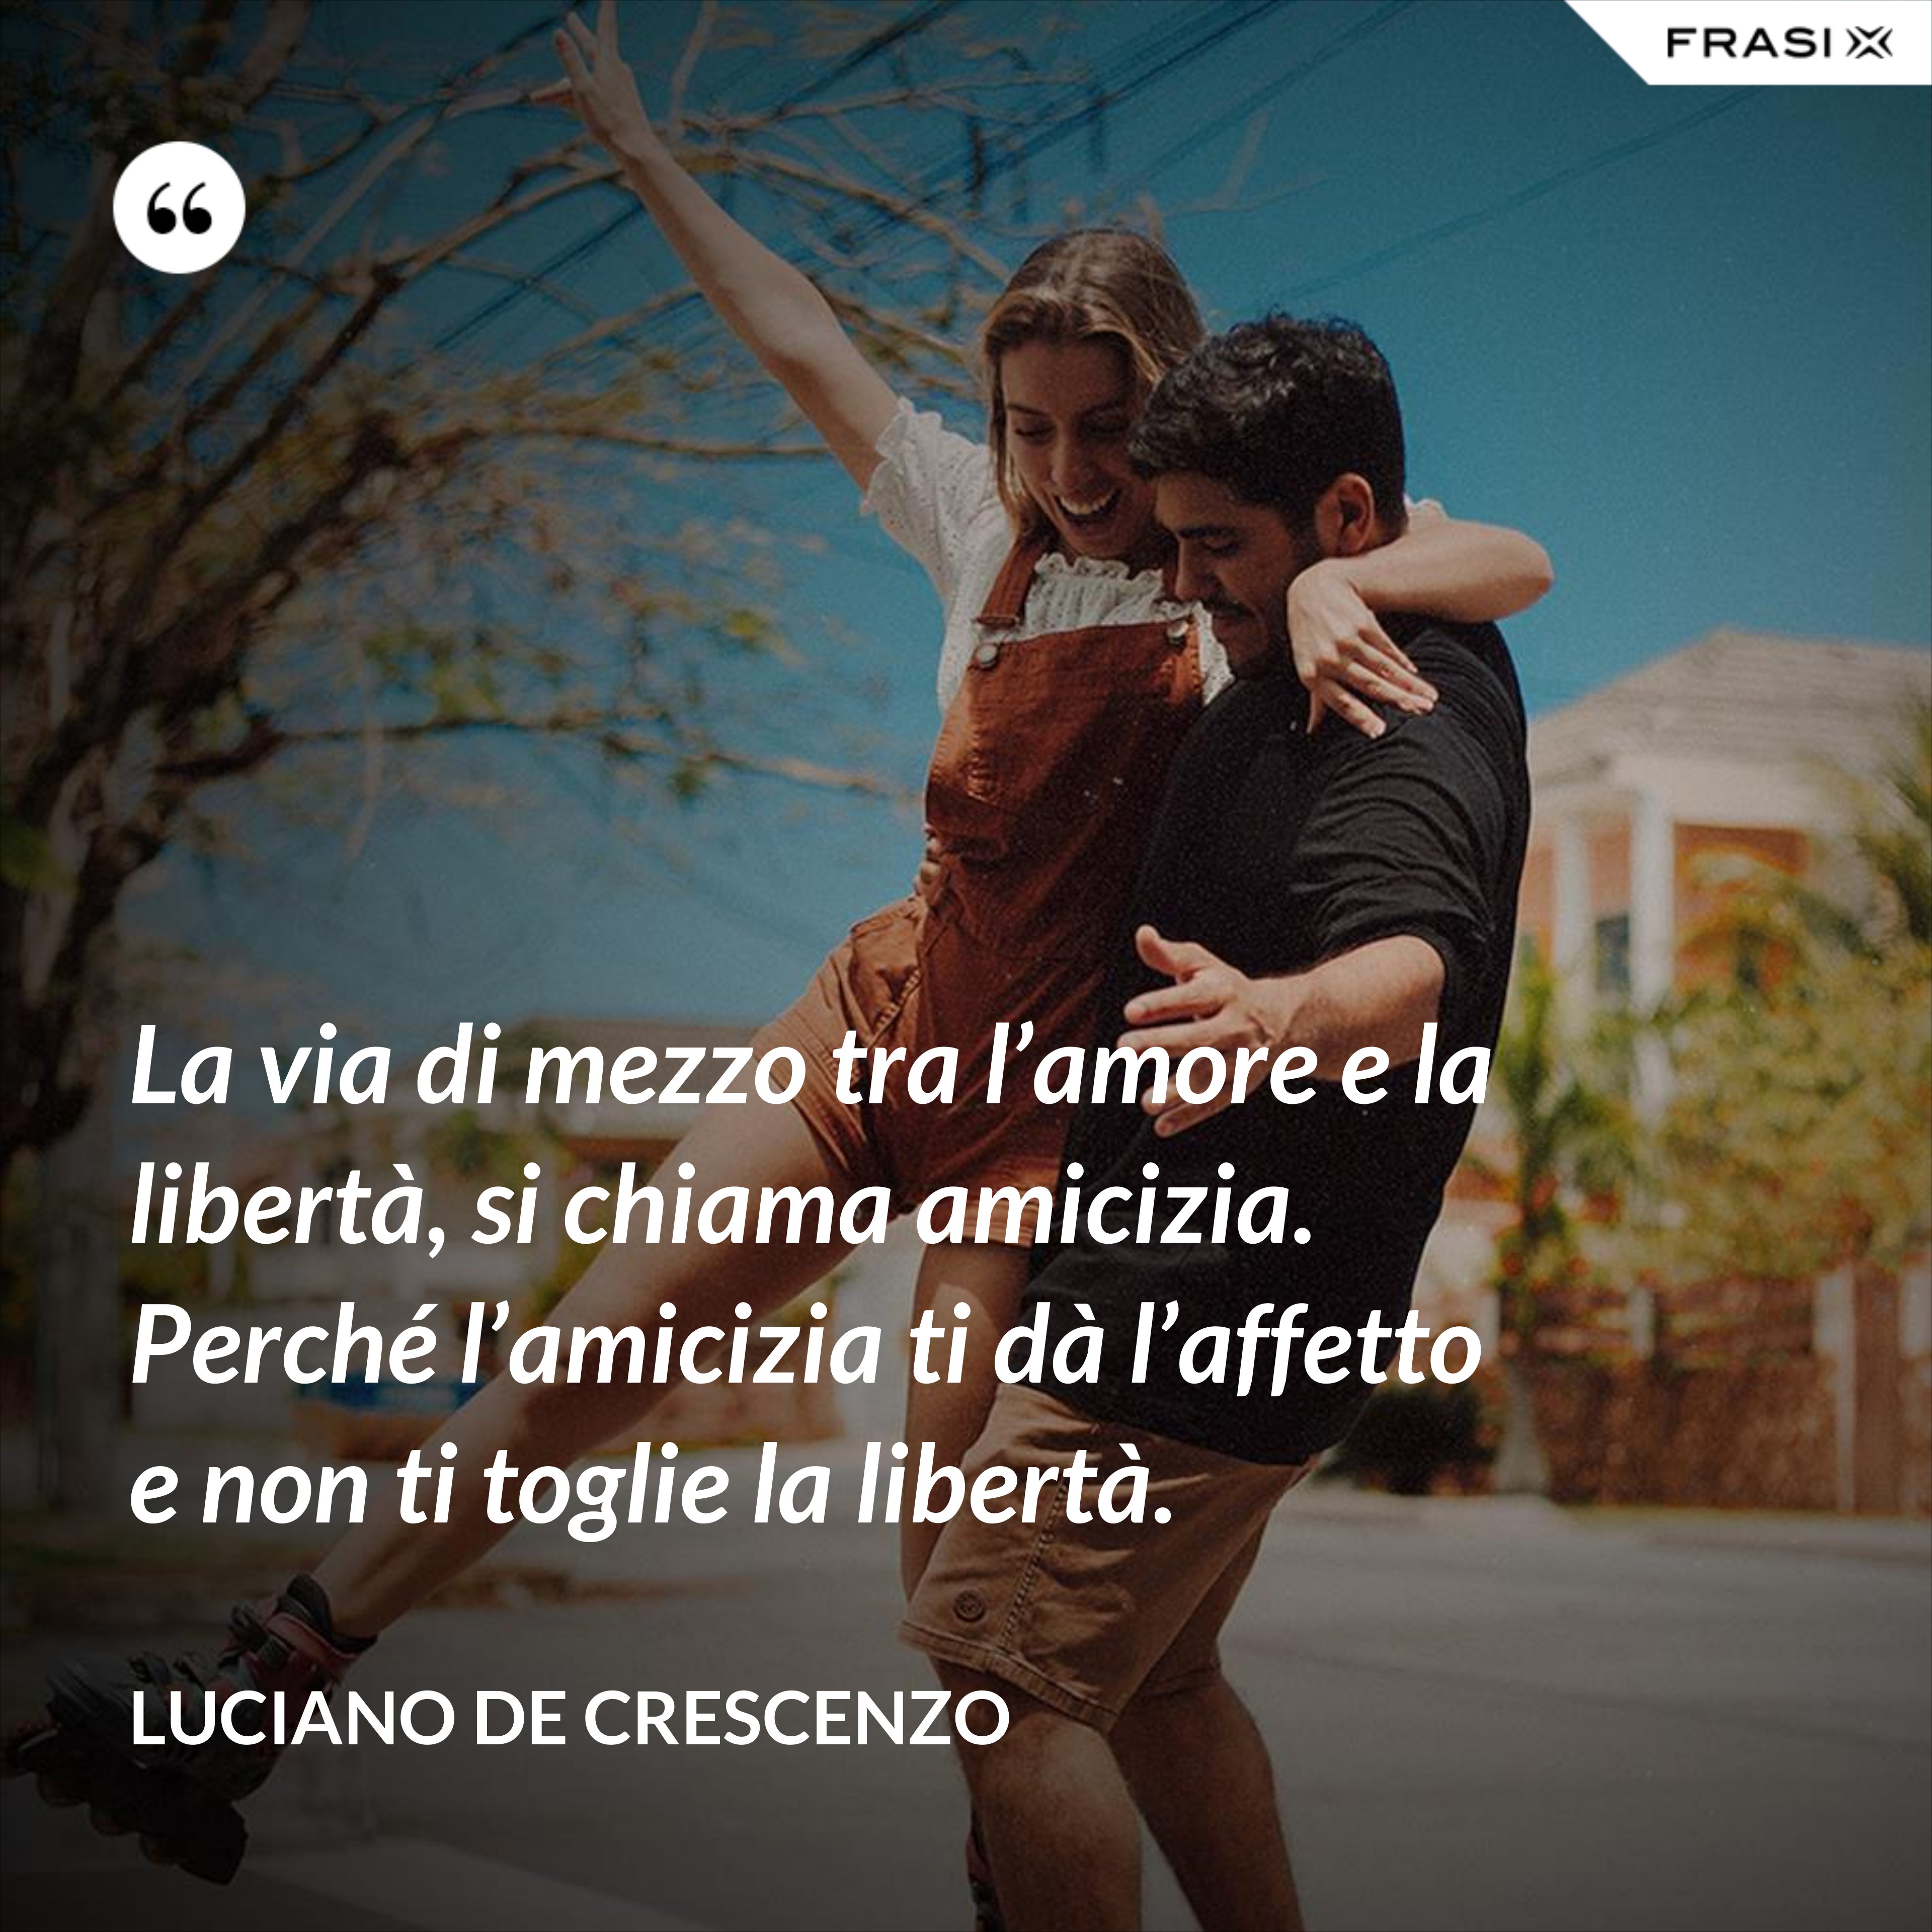 La via di mezzo tra l’amore e la libertà, si chiama amicizia. Perché l’amicizia ti dà l’affetto e non ti toglie la libertà. - Luciano De Crescenzo